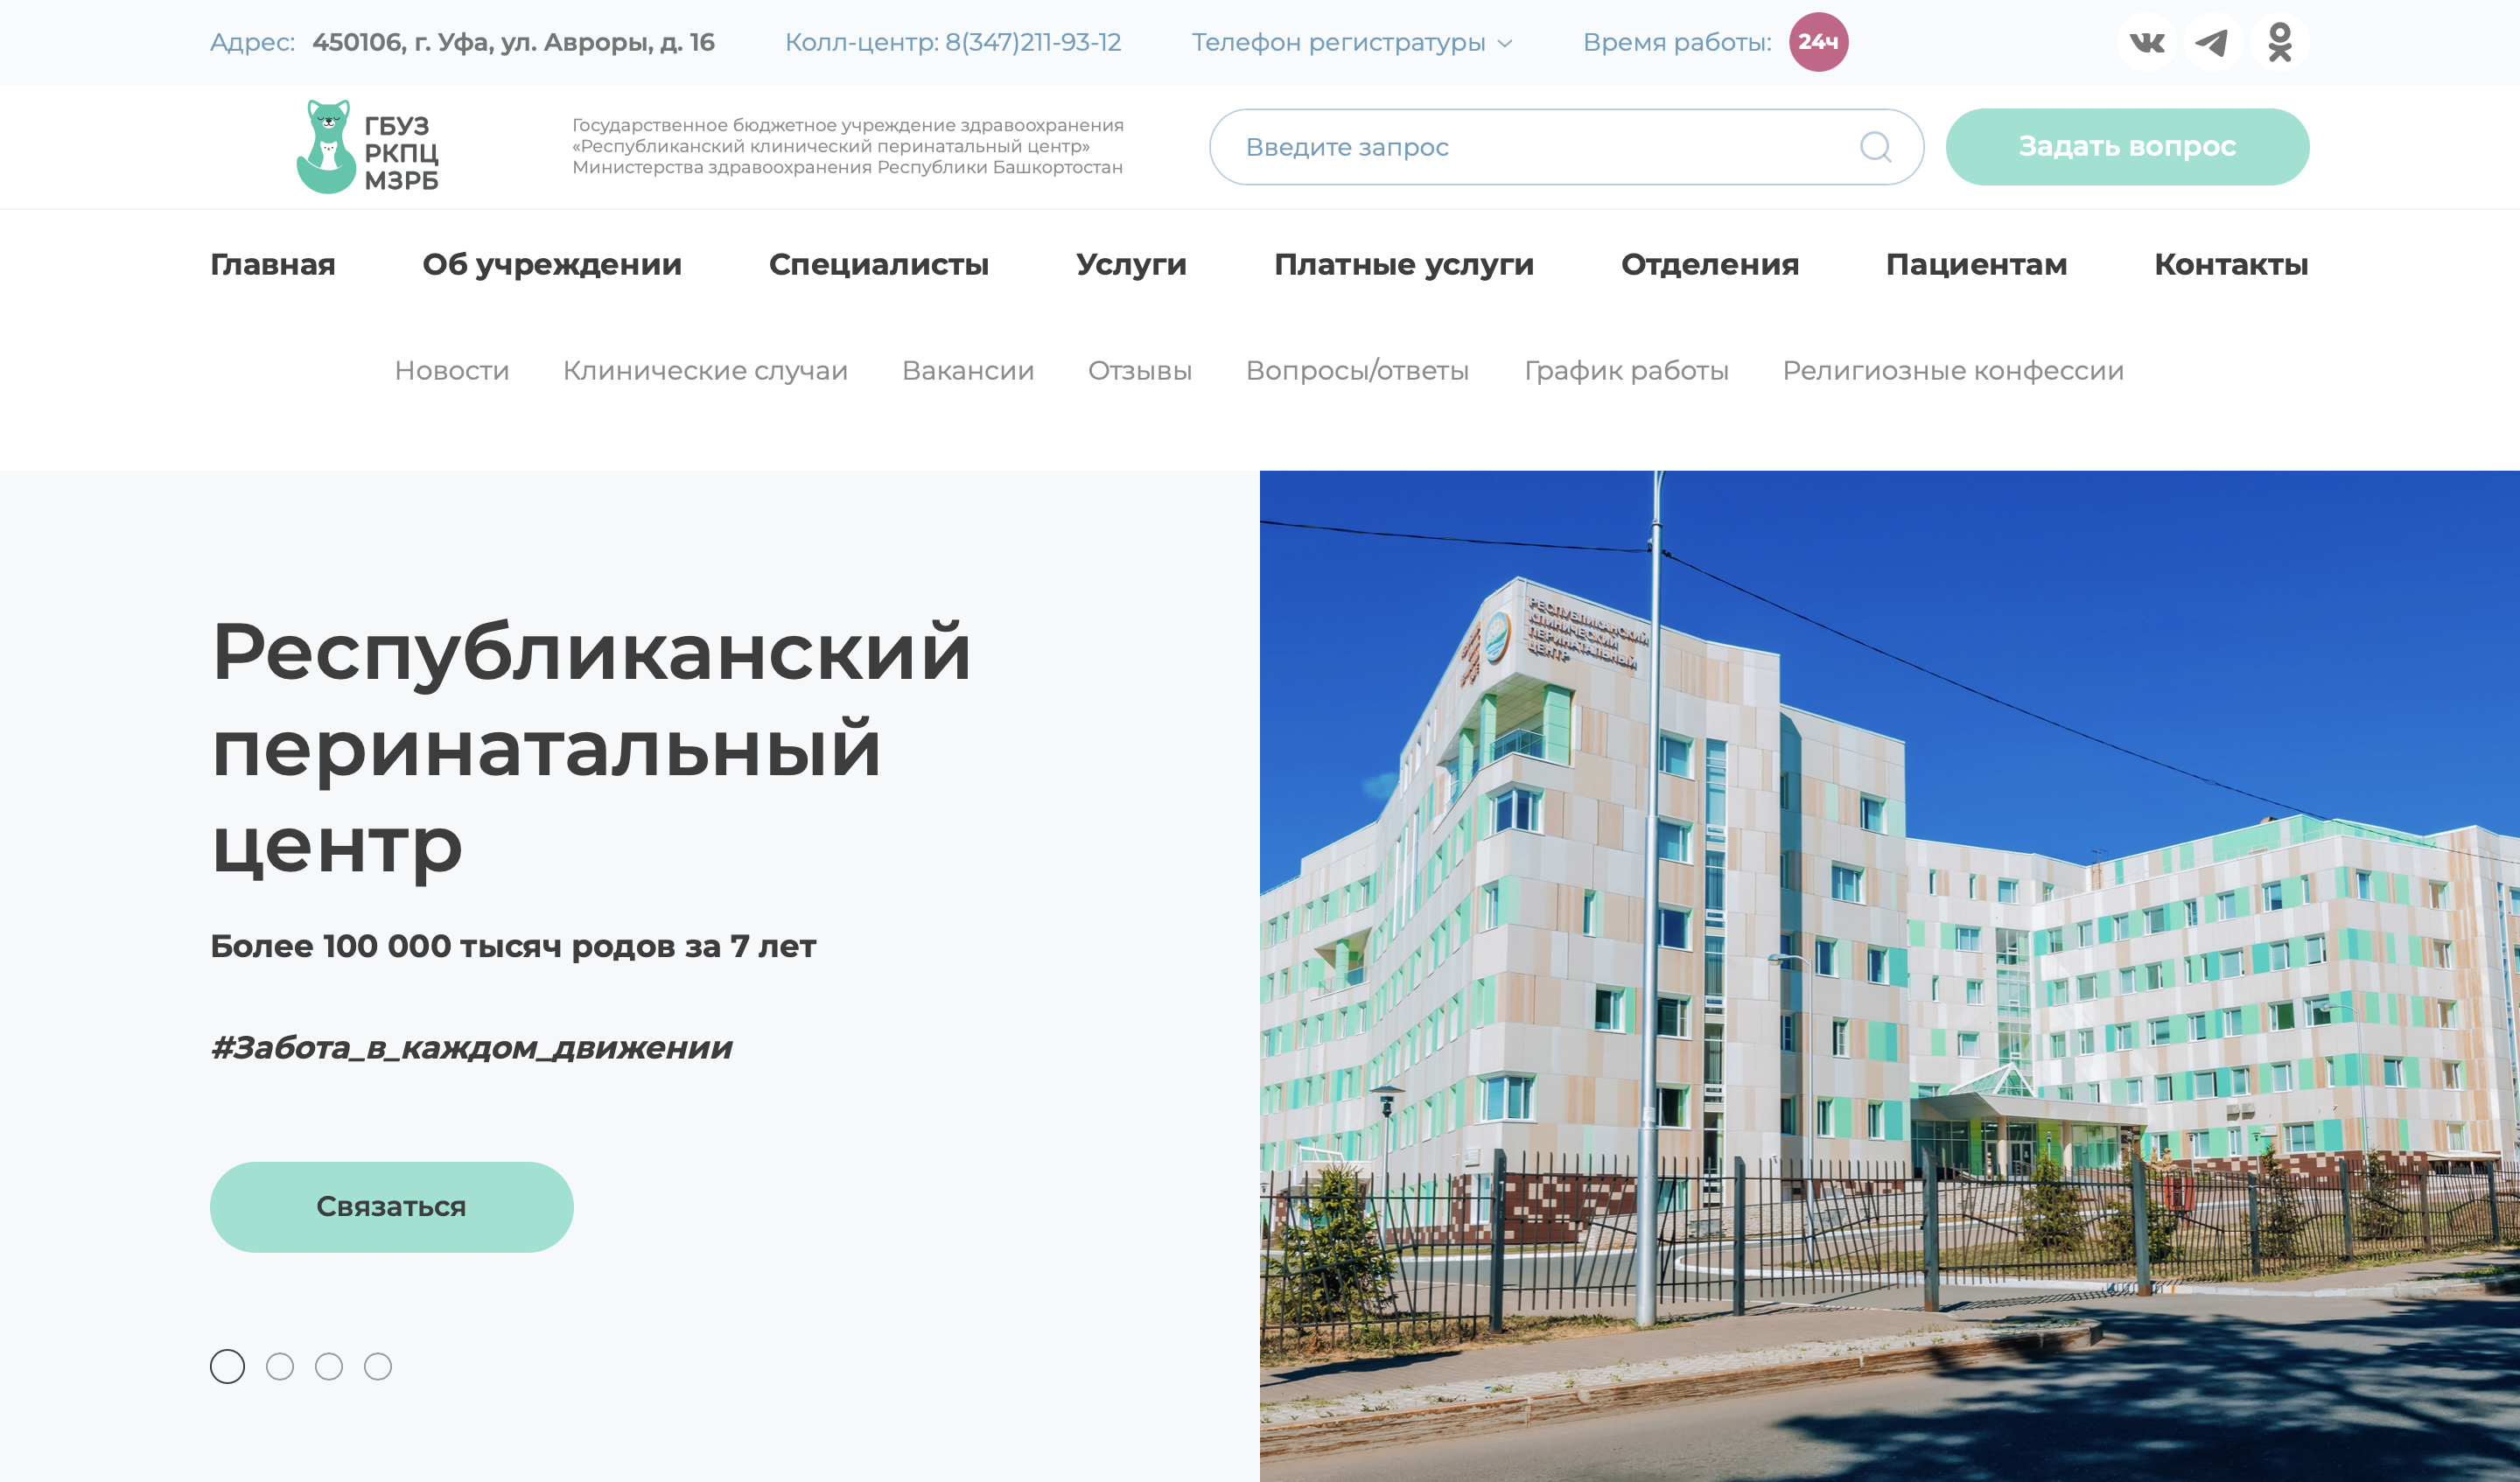 Сайт перинатального центра хабаровск. Республиканский перинатальный центр Байкал-Daily. Республиканский перинатальный центр открыли Байкал-Daily.